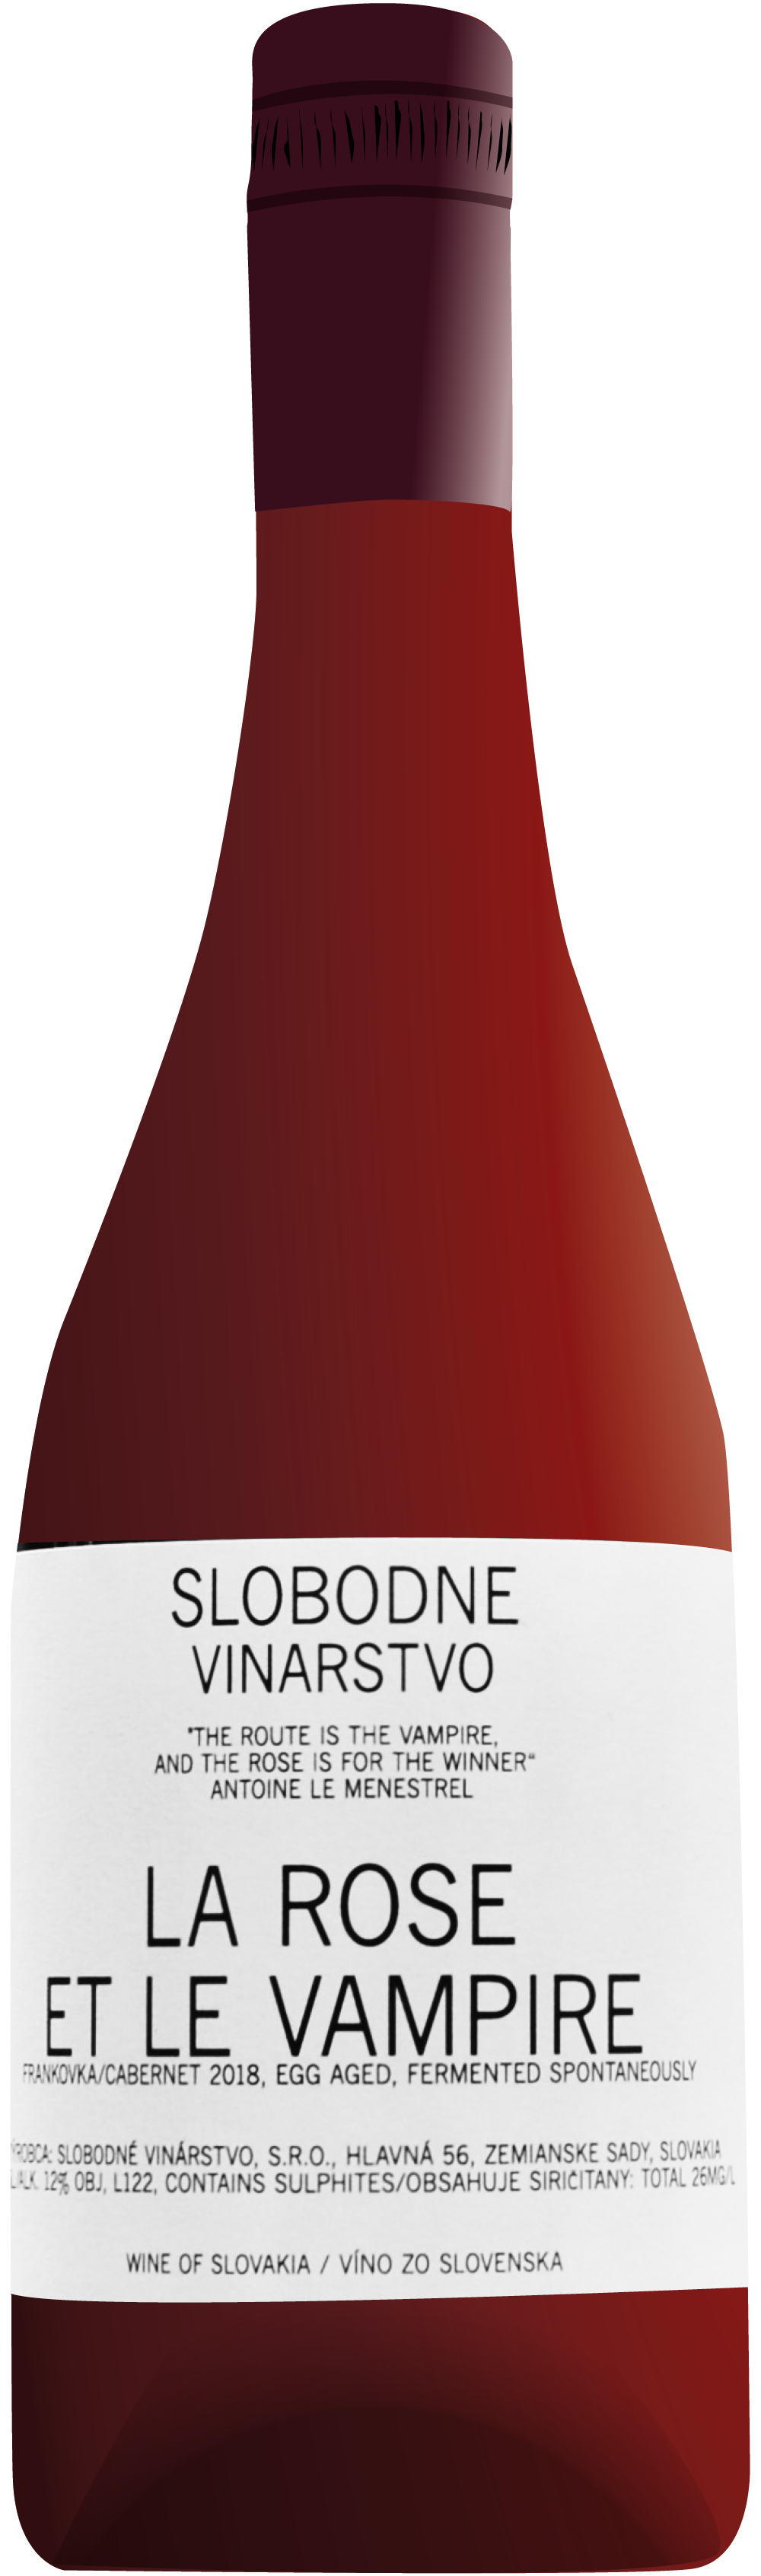 the natural wine company club september 2020 slovakia slobodne vinarstvo la rose et le vampire